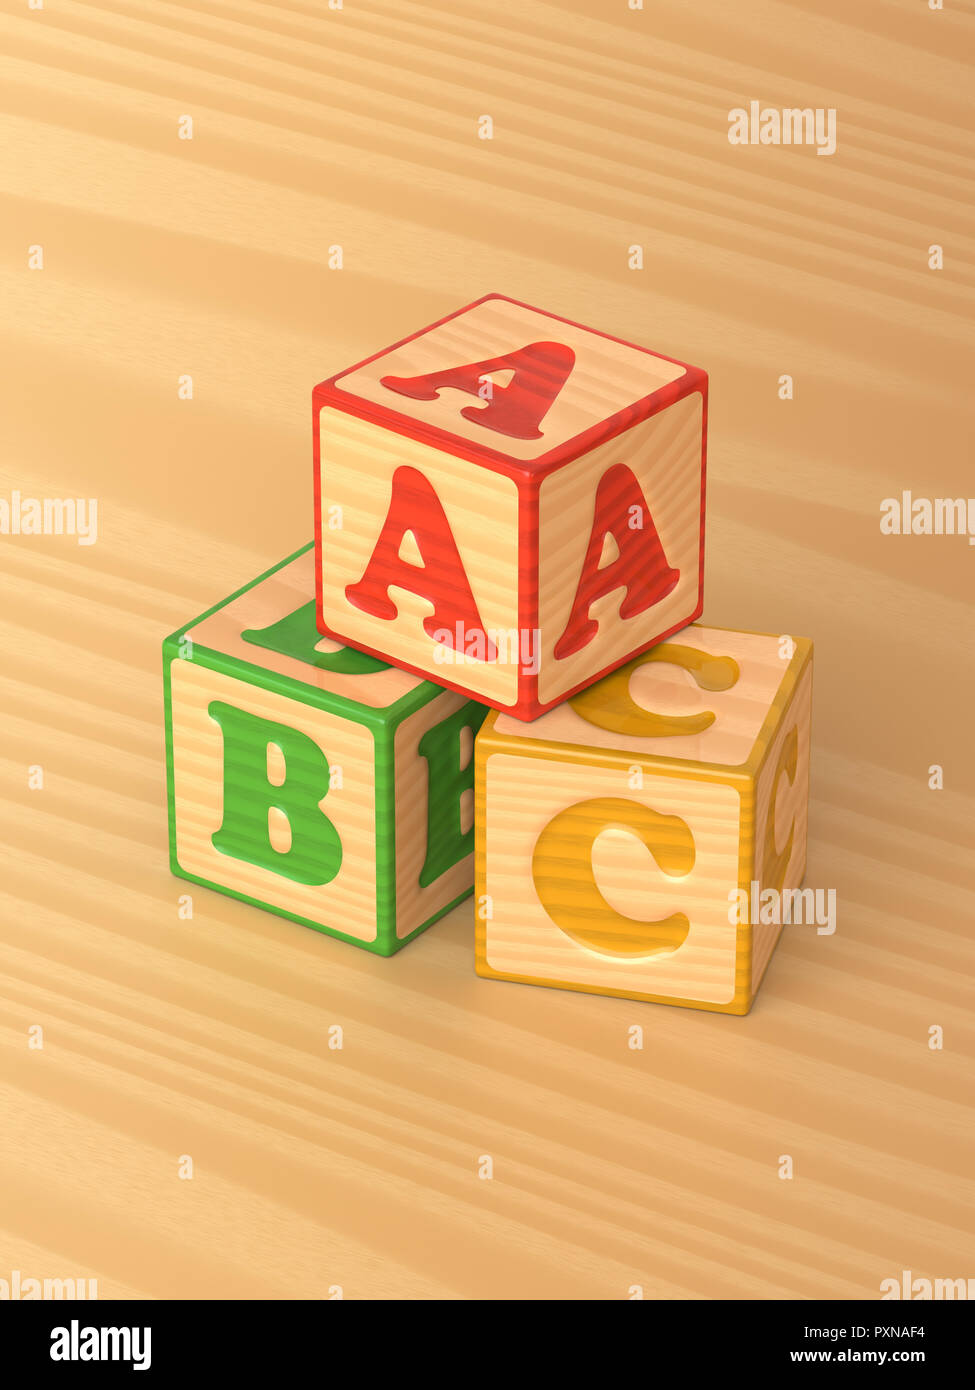 3D-gerenderte schräger Blick auf eine Pyramide von Rot, Grün und Gelb Holzspielzeug alphabet Blöcke auf einem hellen Hintergrund. Stockfoto